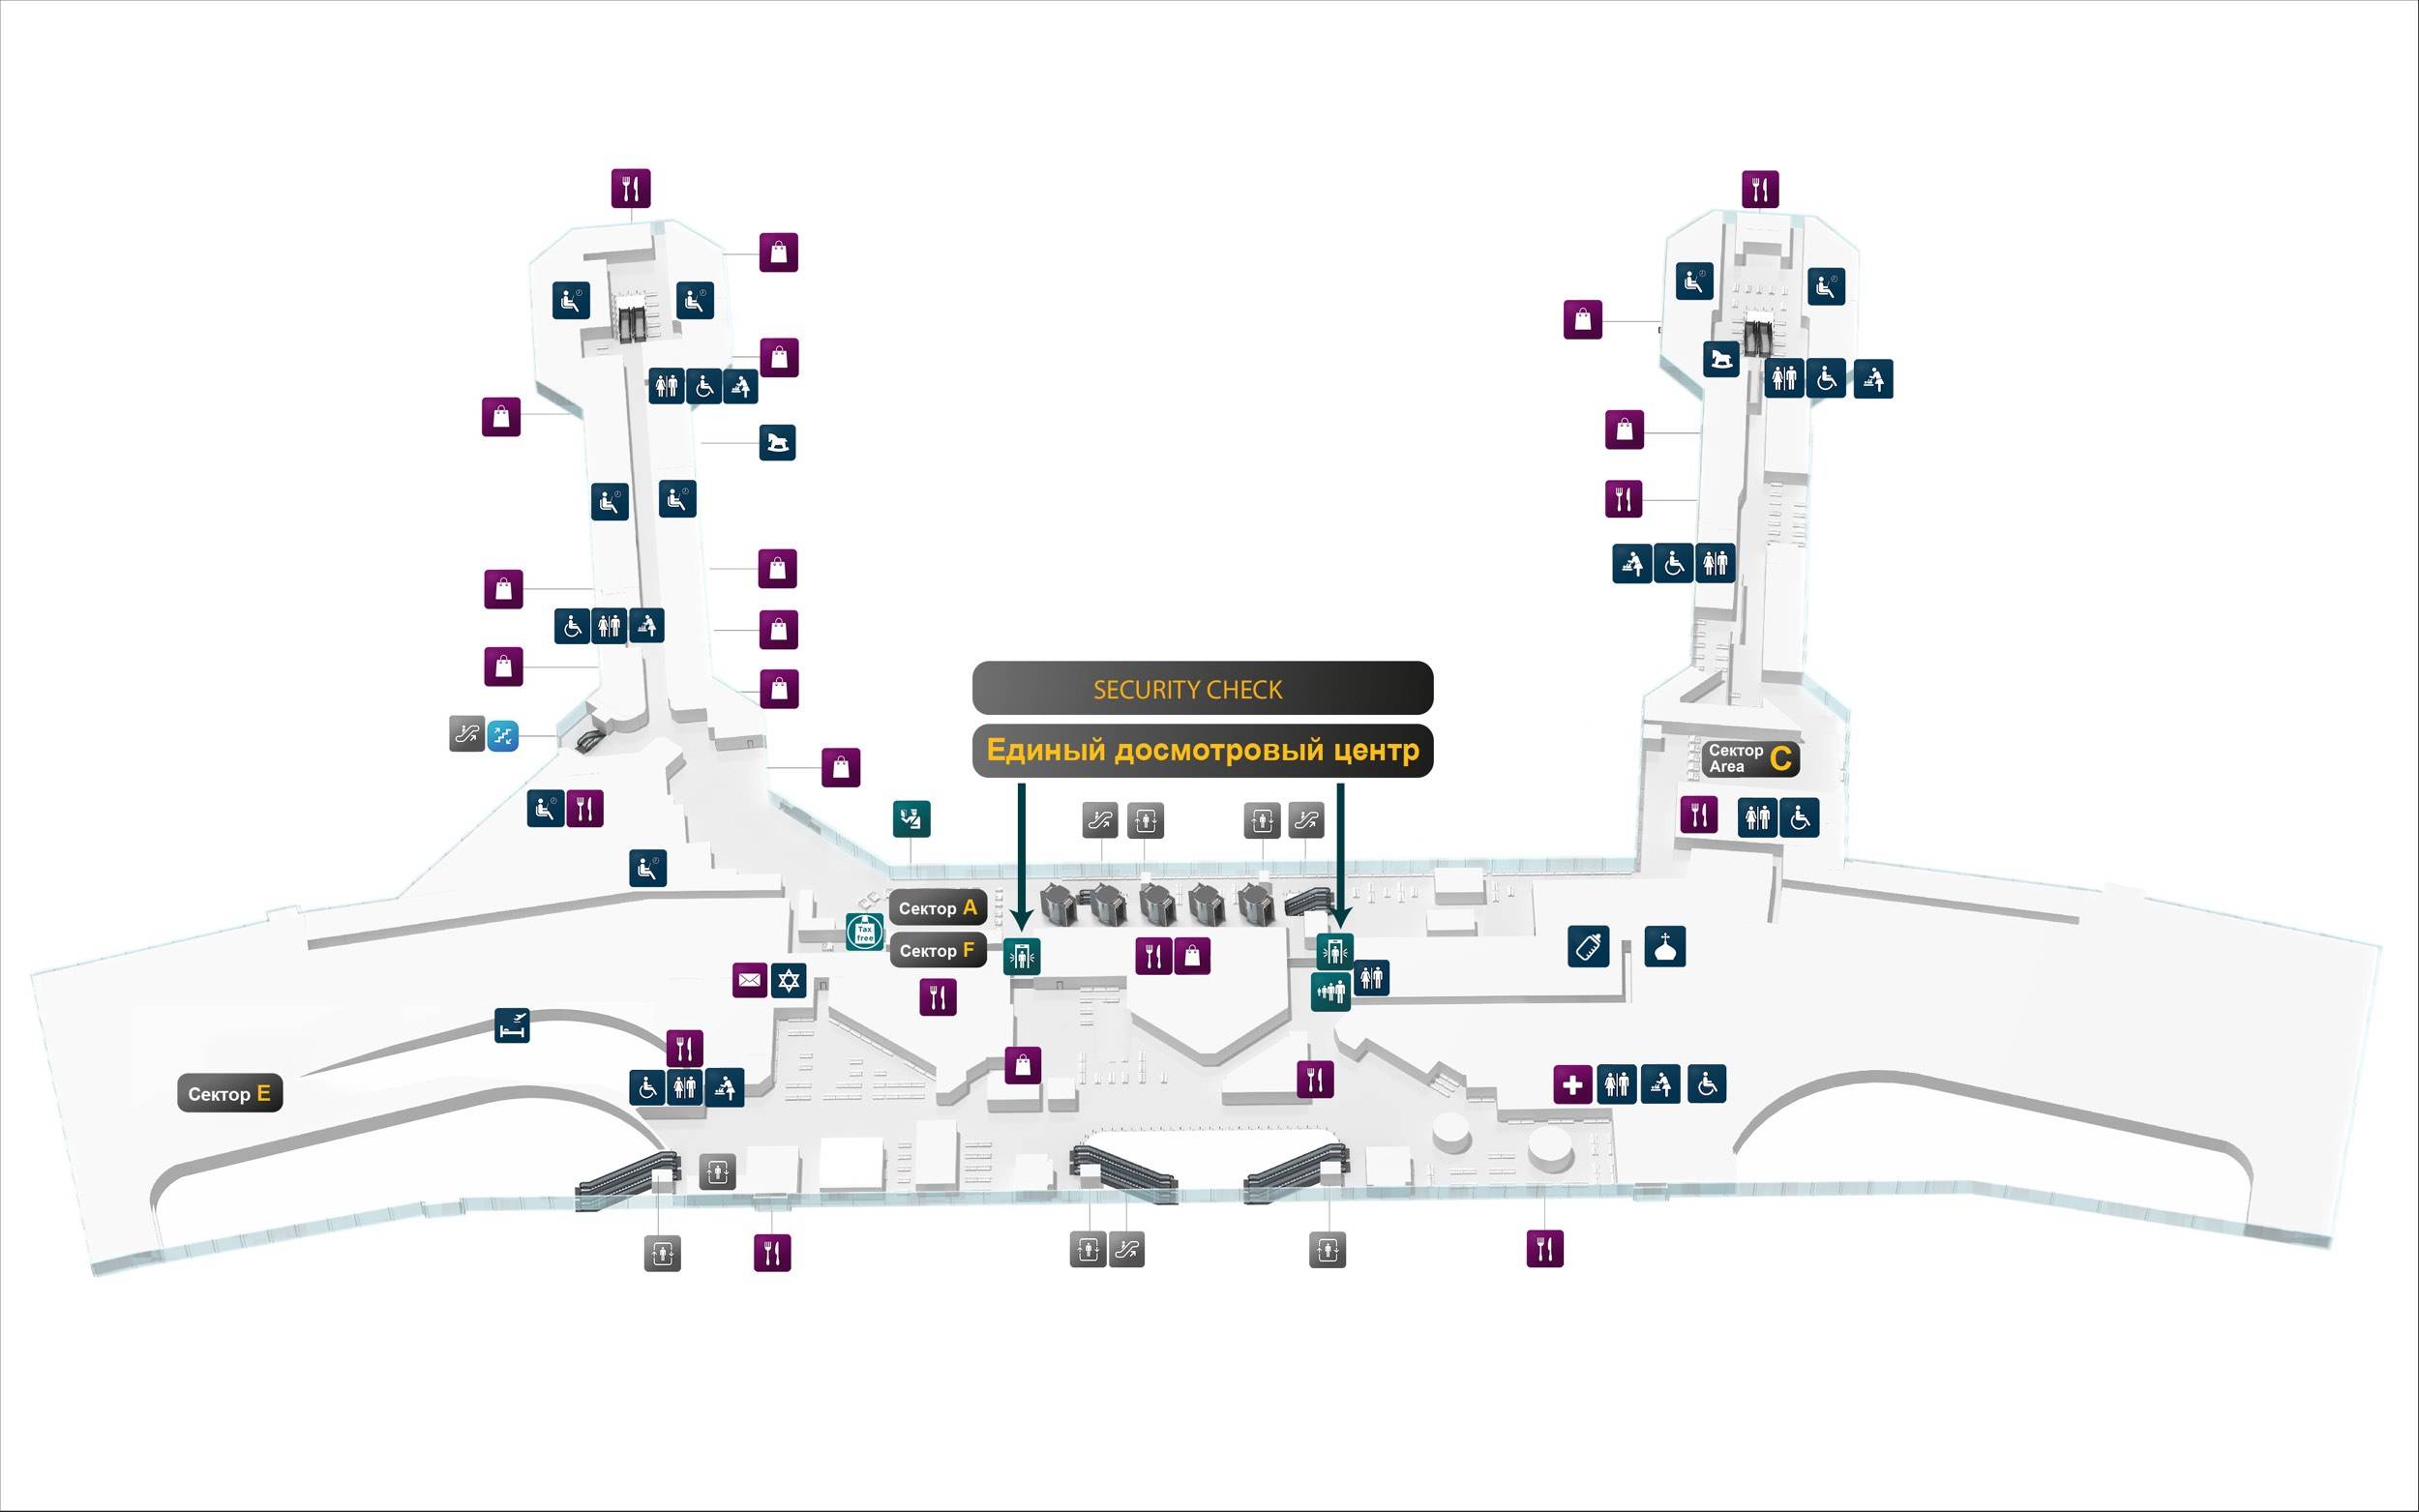 Схема аэропорта домодедово: терминалы и выходы